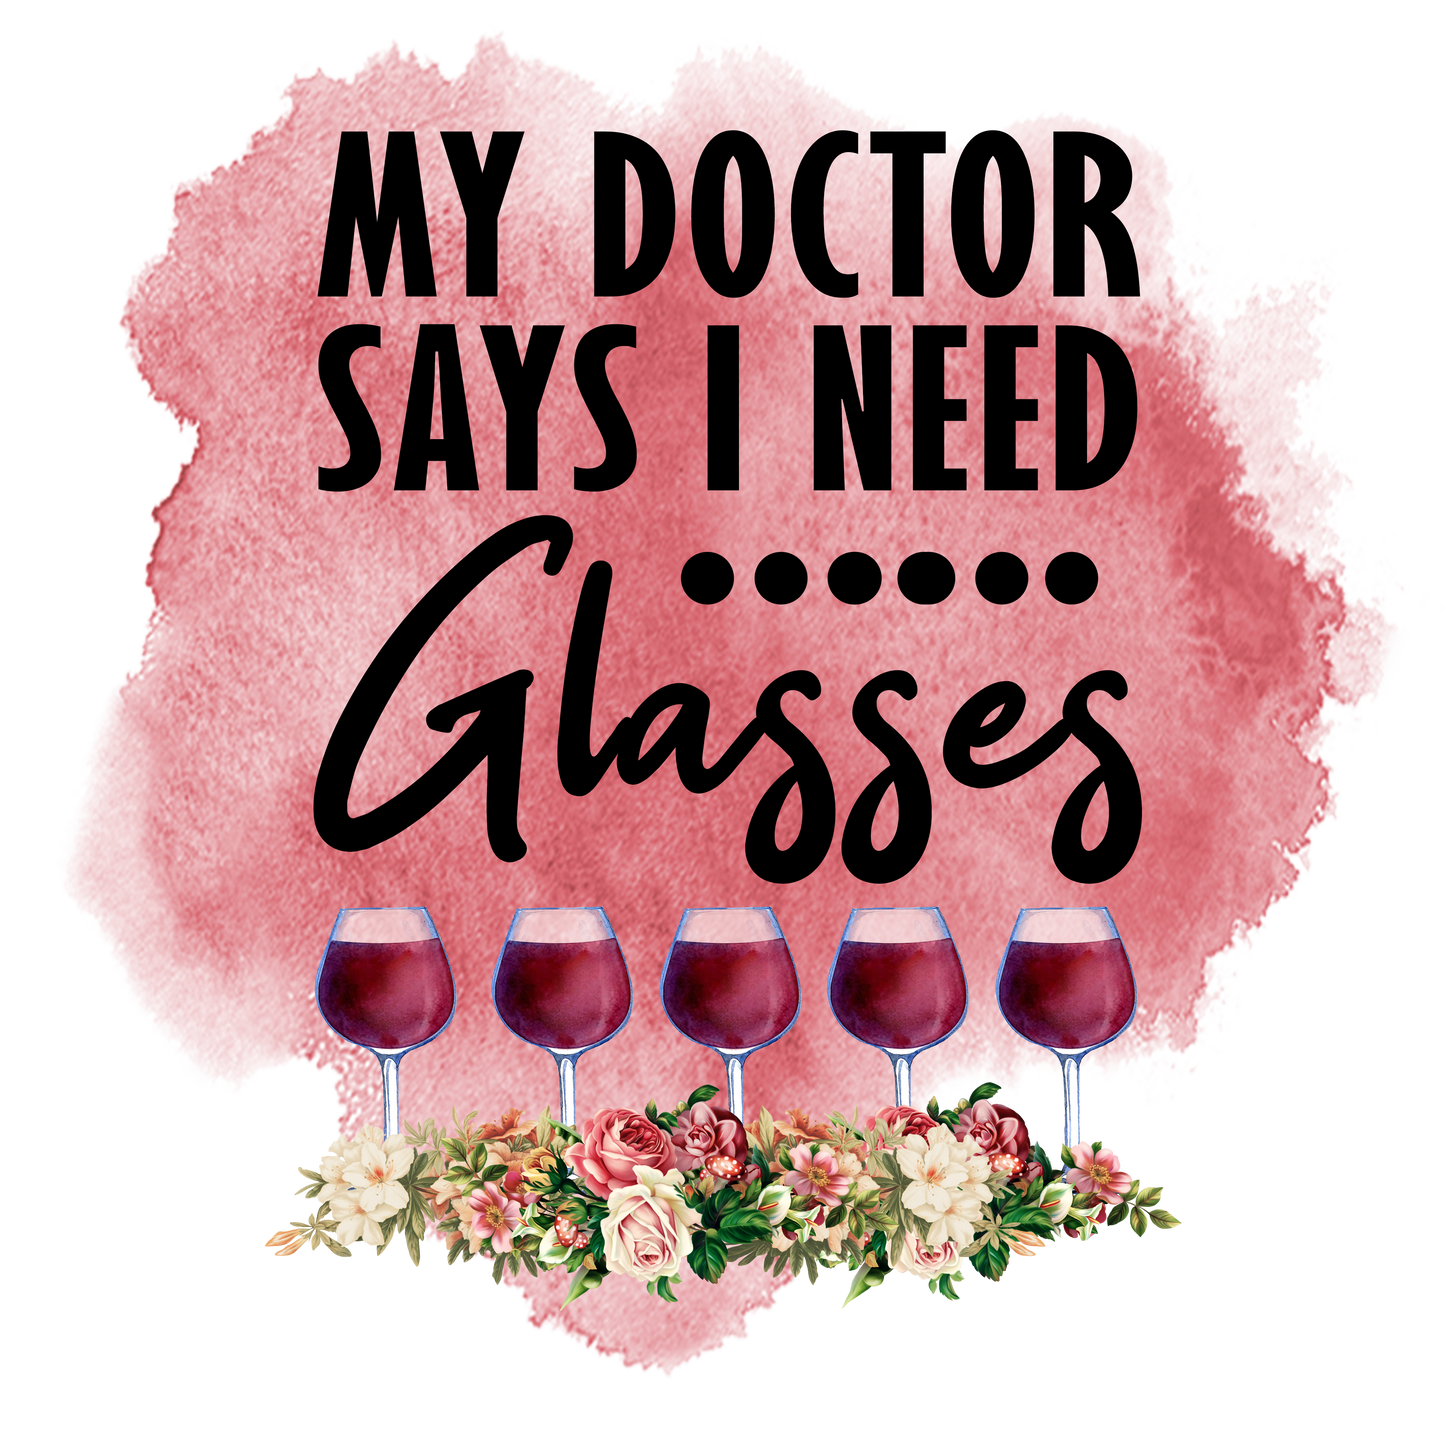 DOC SAYS I NEED GLASSES